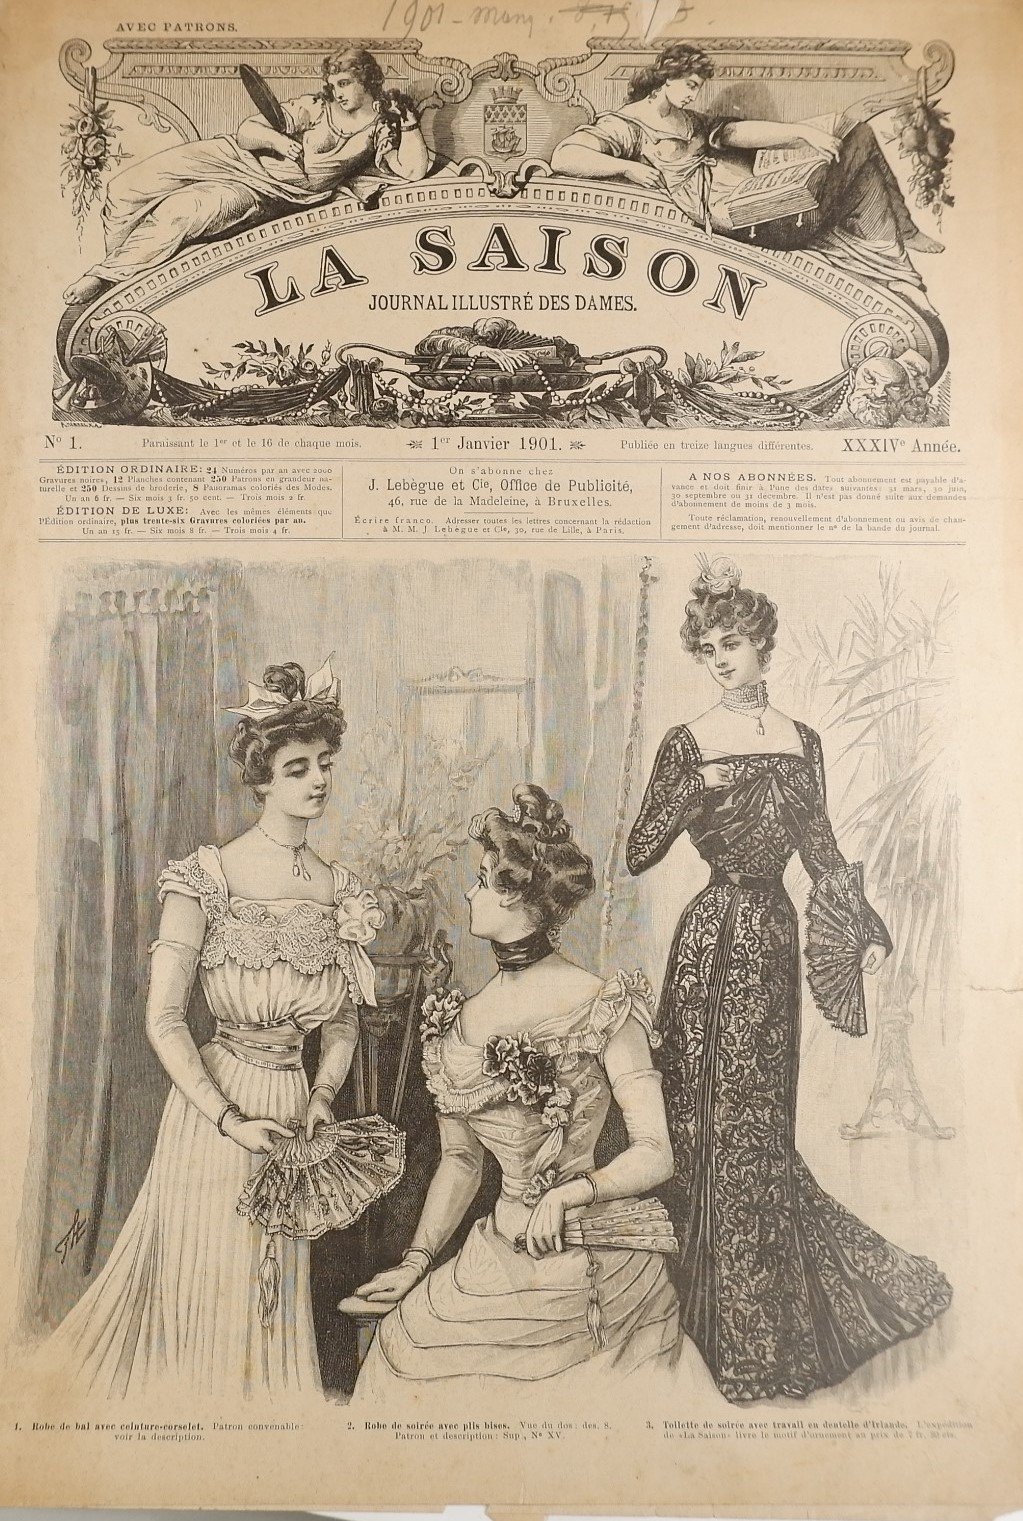 Sammlung: La Saison, Journal illustre`des dames (1901) (Volkskunde- und Freilichtmuseum Roscheider Hof RR-F)